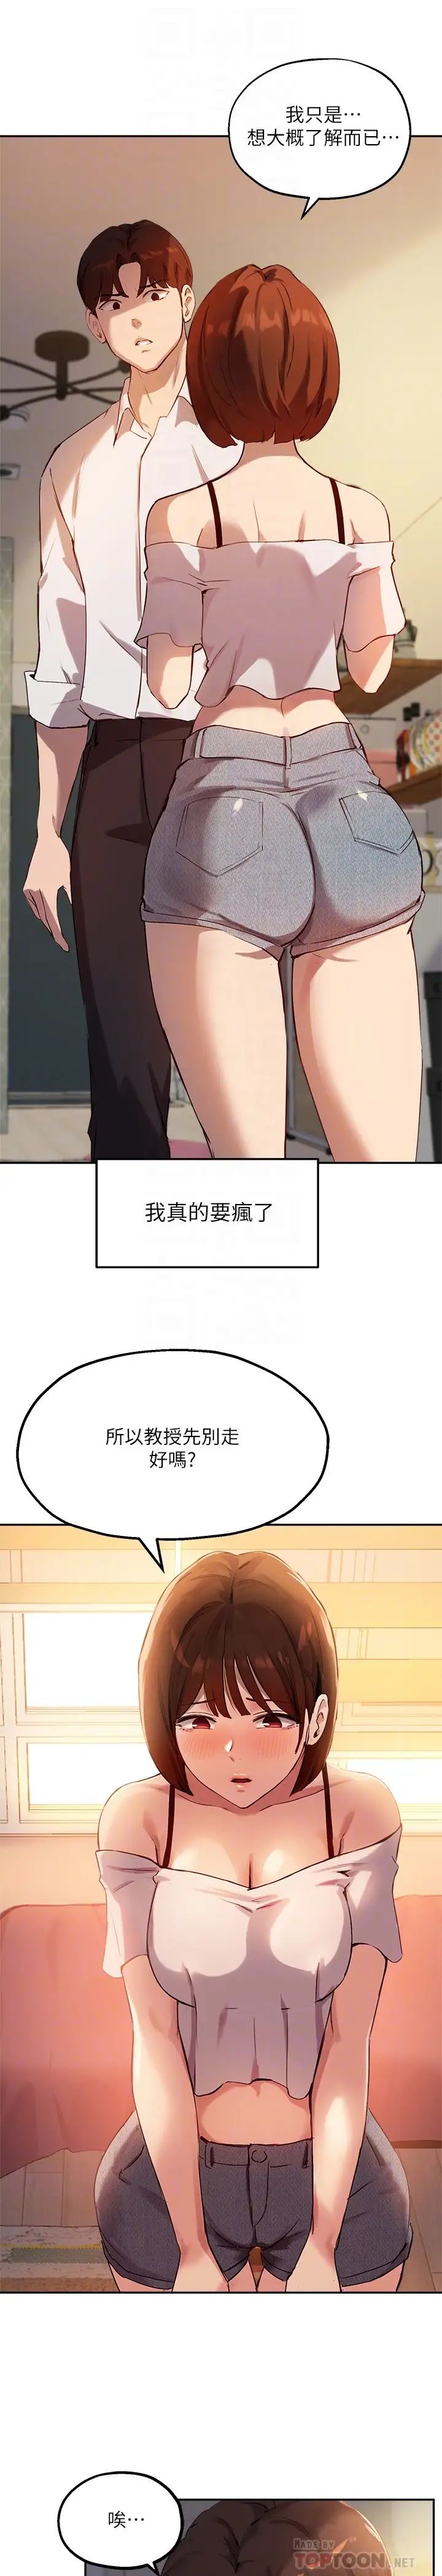 韩国污漫画 指導女大生 第16话游走禁忌边缘的两人 8